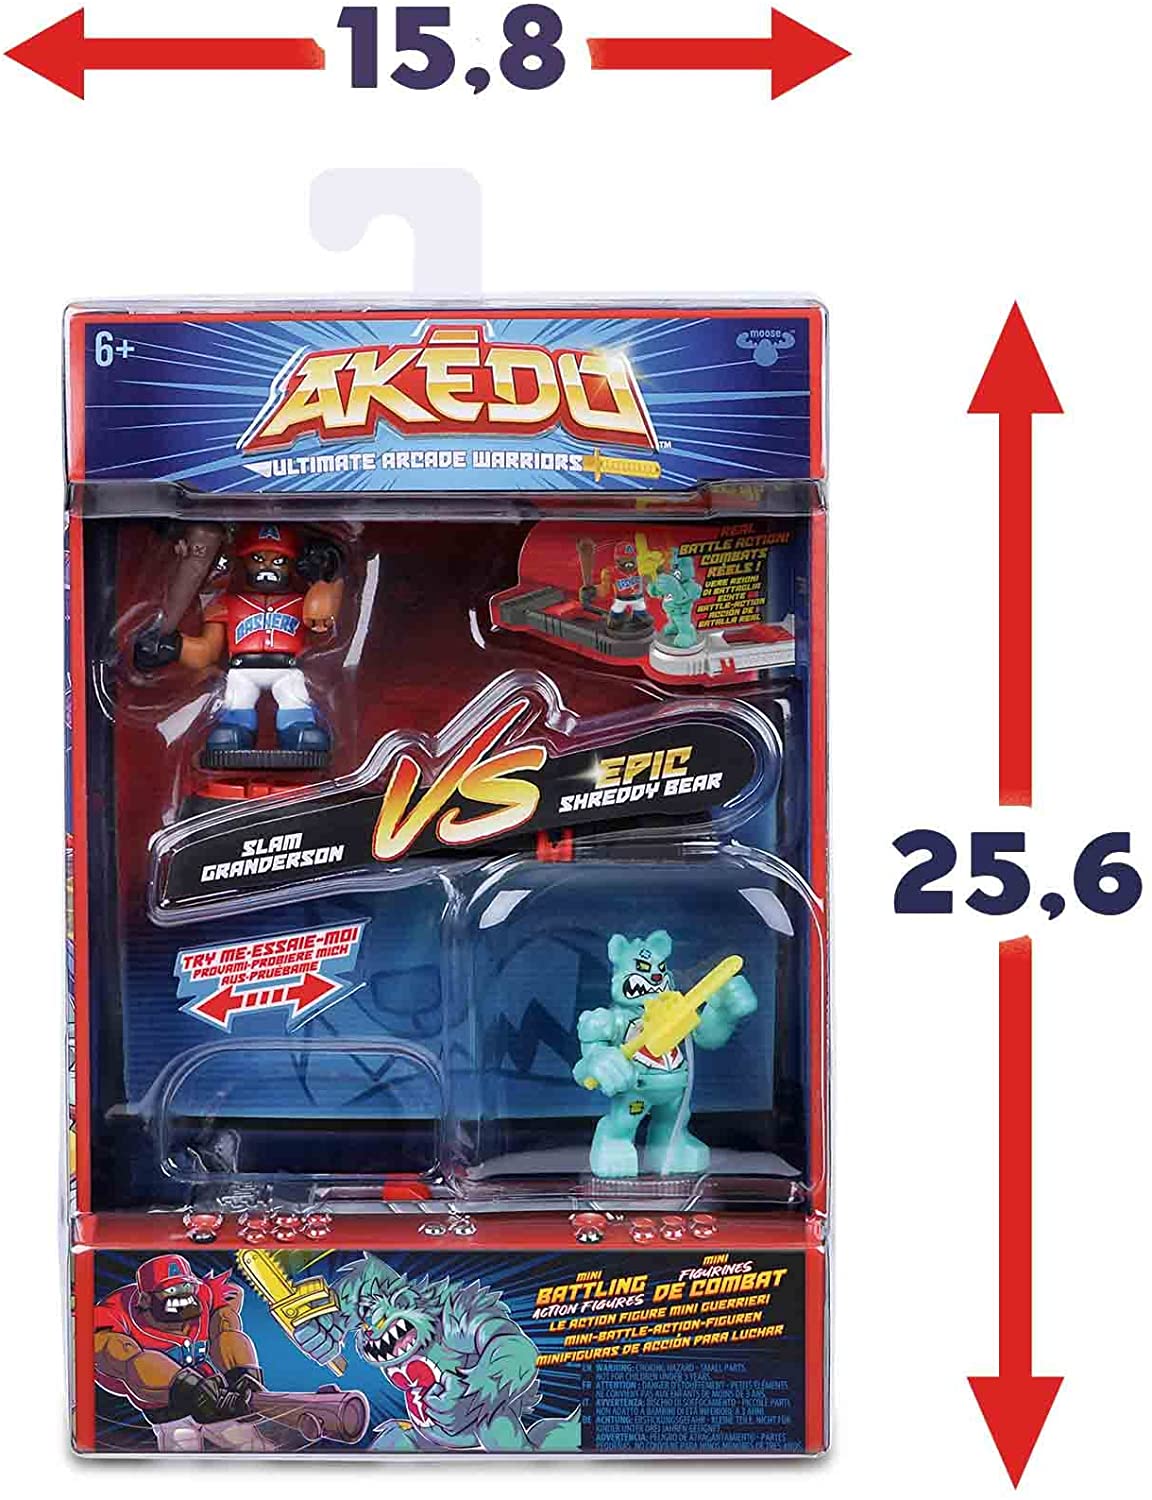 AKEDO - Versus Pack, figure di Arcade, con due bambole e 2 controlli per  maneggiarli e giocare a casa, 4 confezioni diverse da c